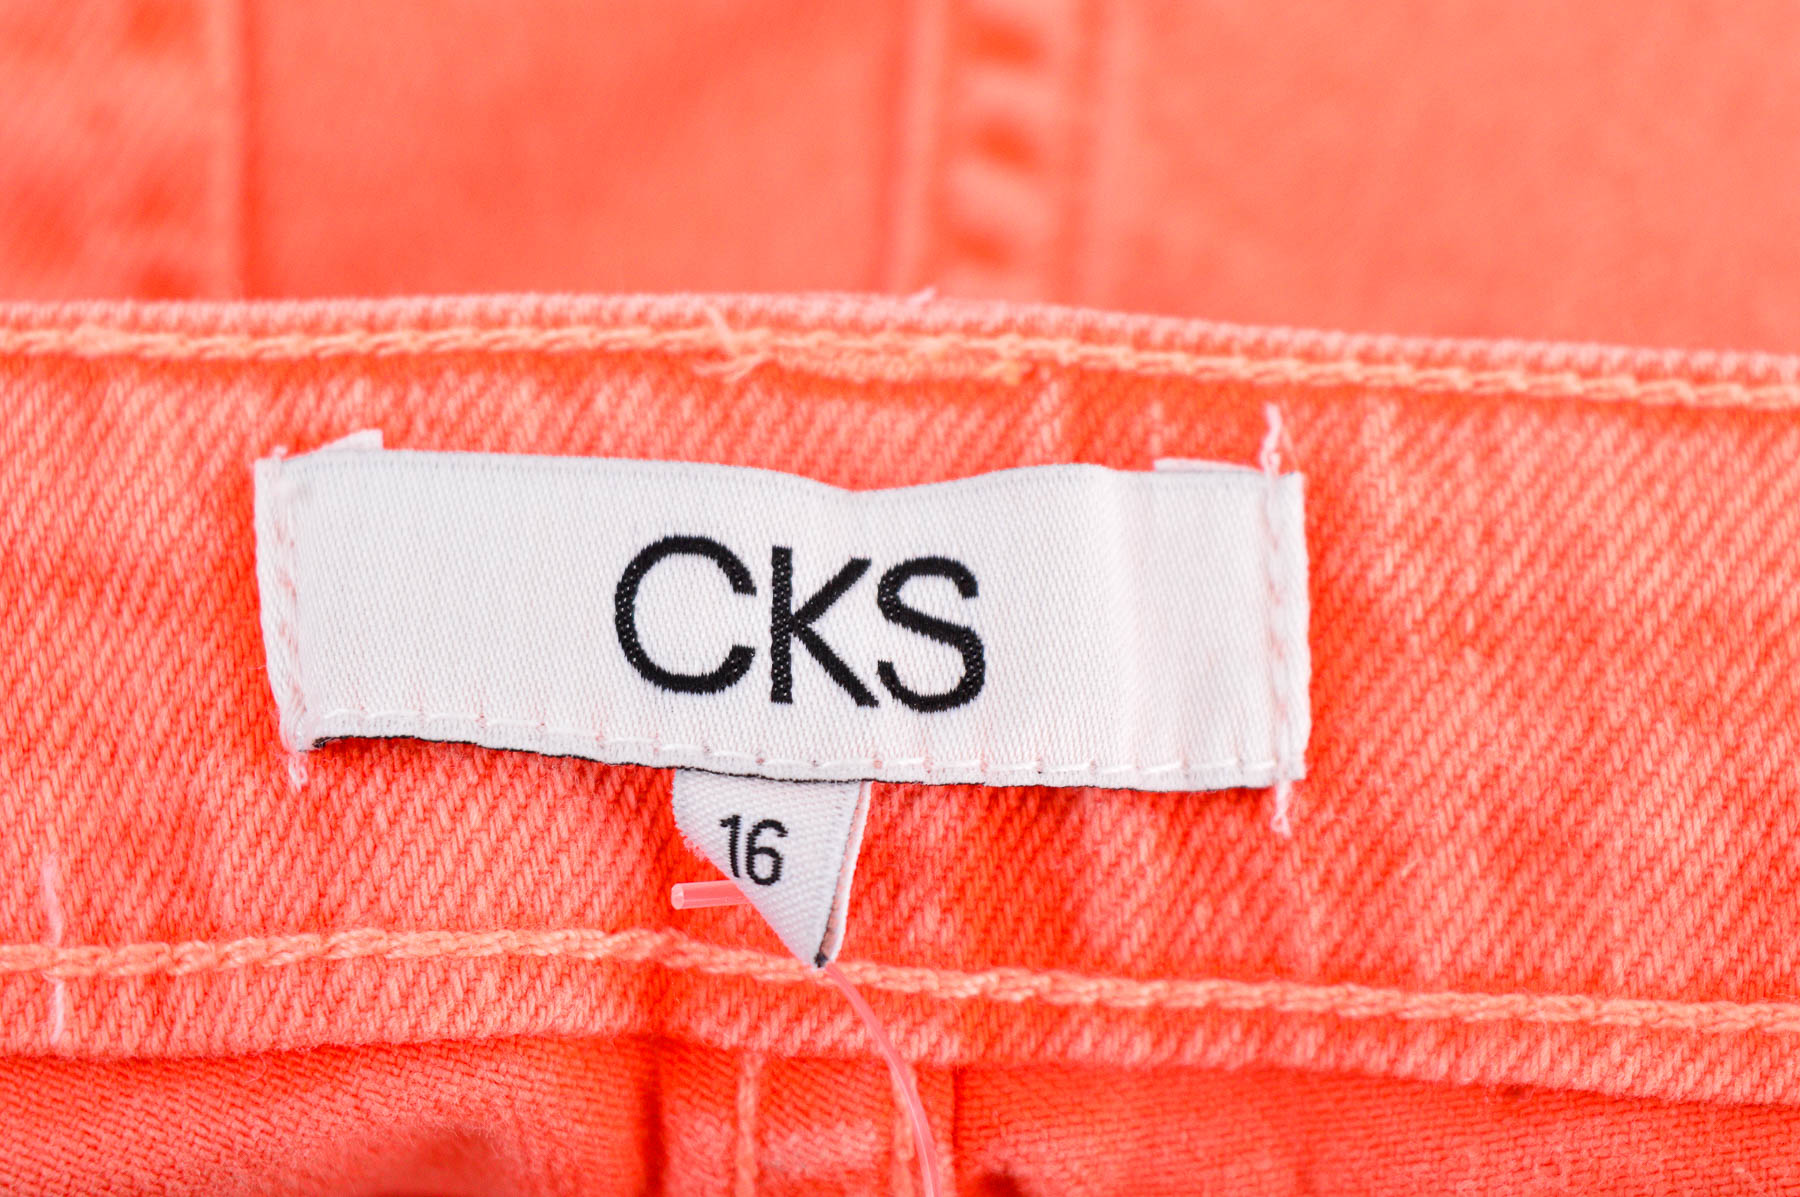 Female shorts - CKS - 2